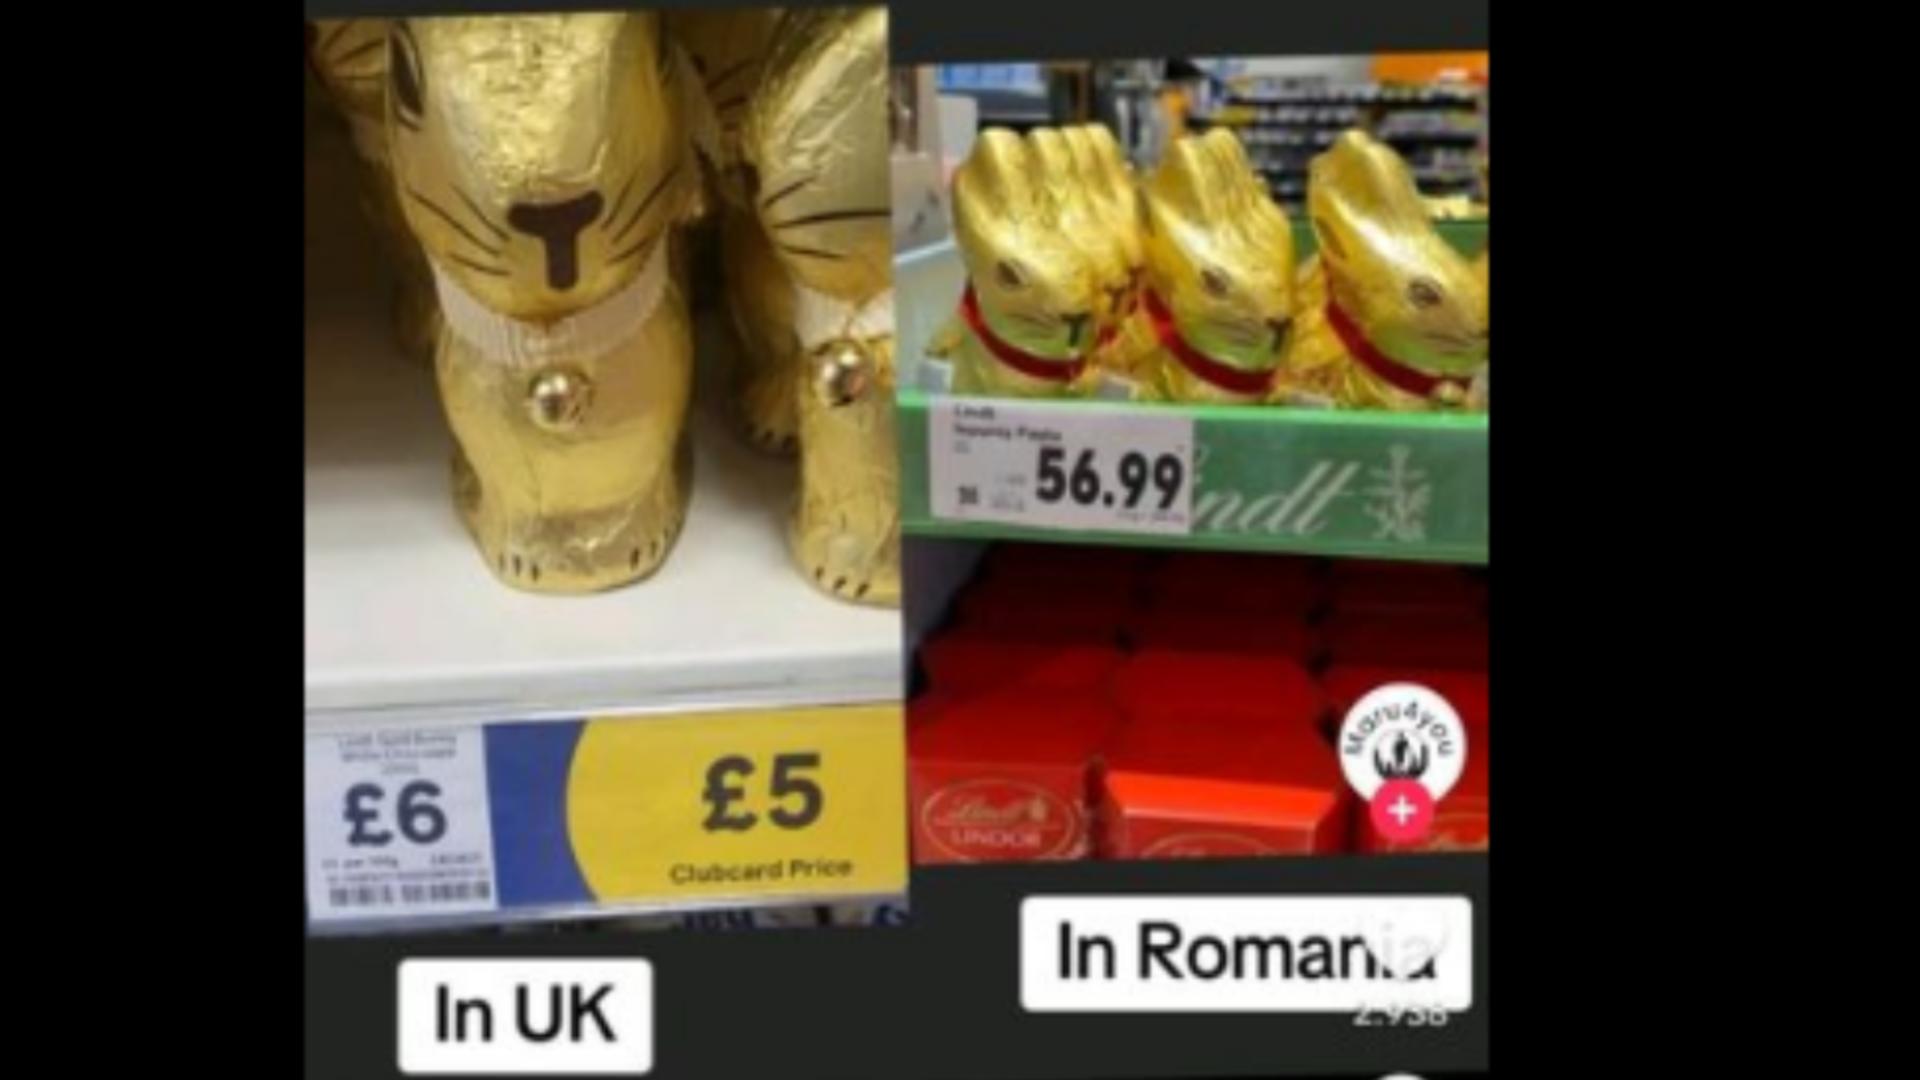 Prețul exorbitant al iepurașilor de ciocolată în România, în comparație cu Marea Britanie